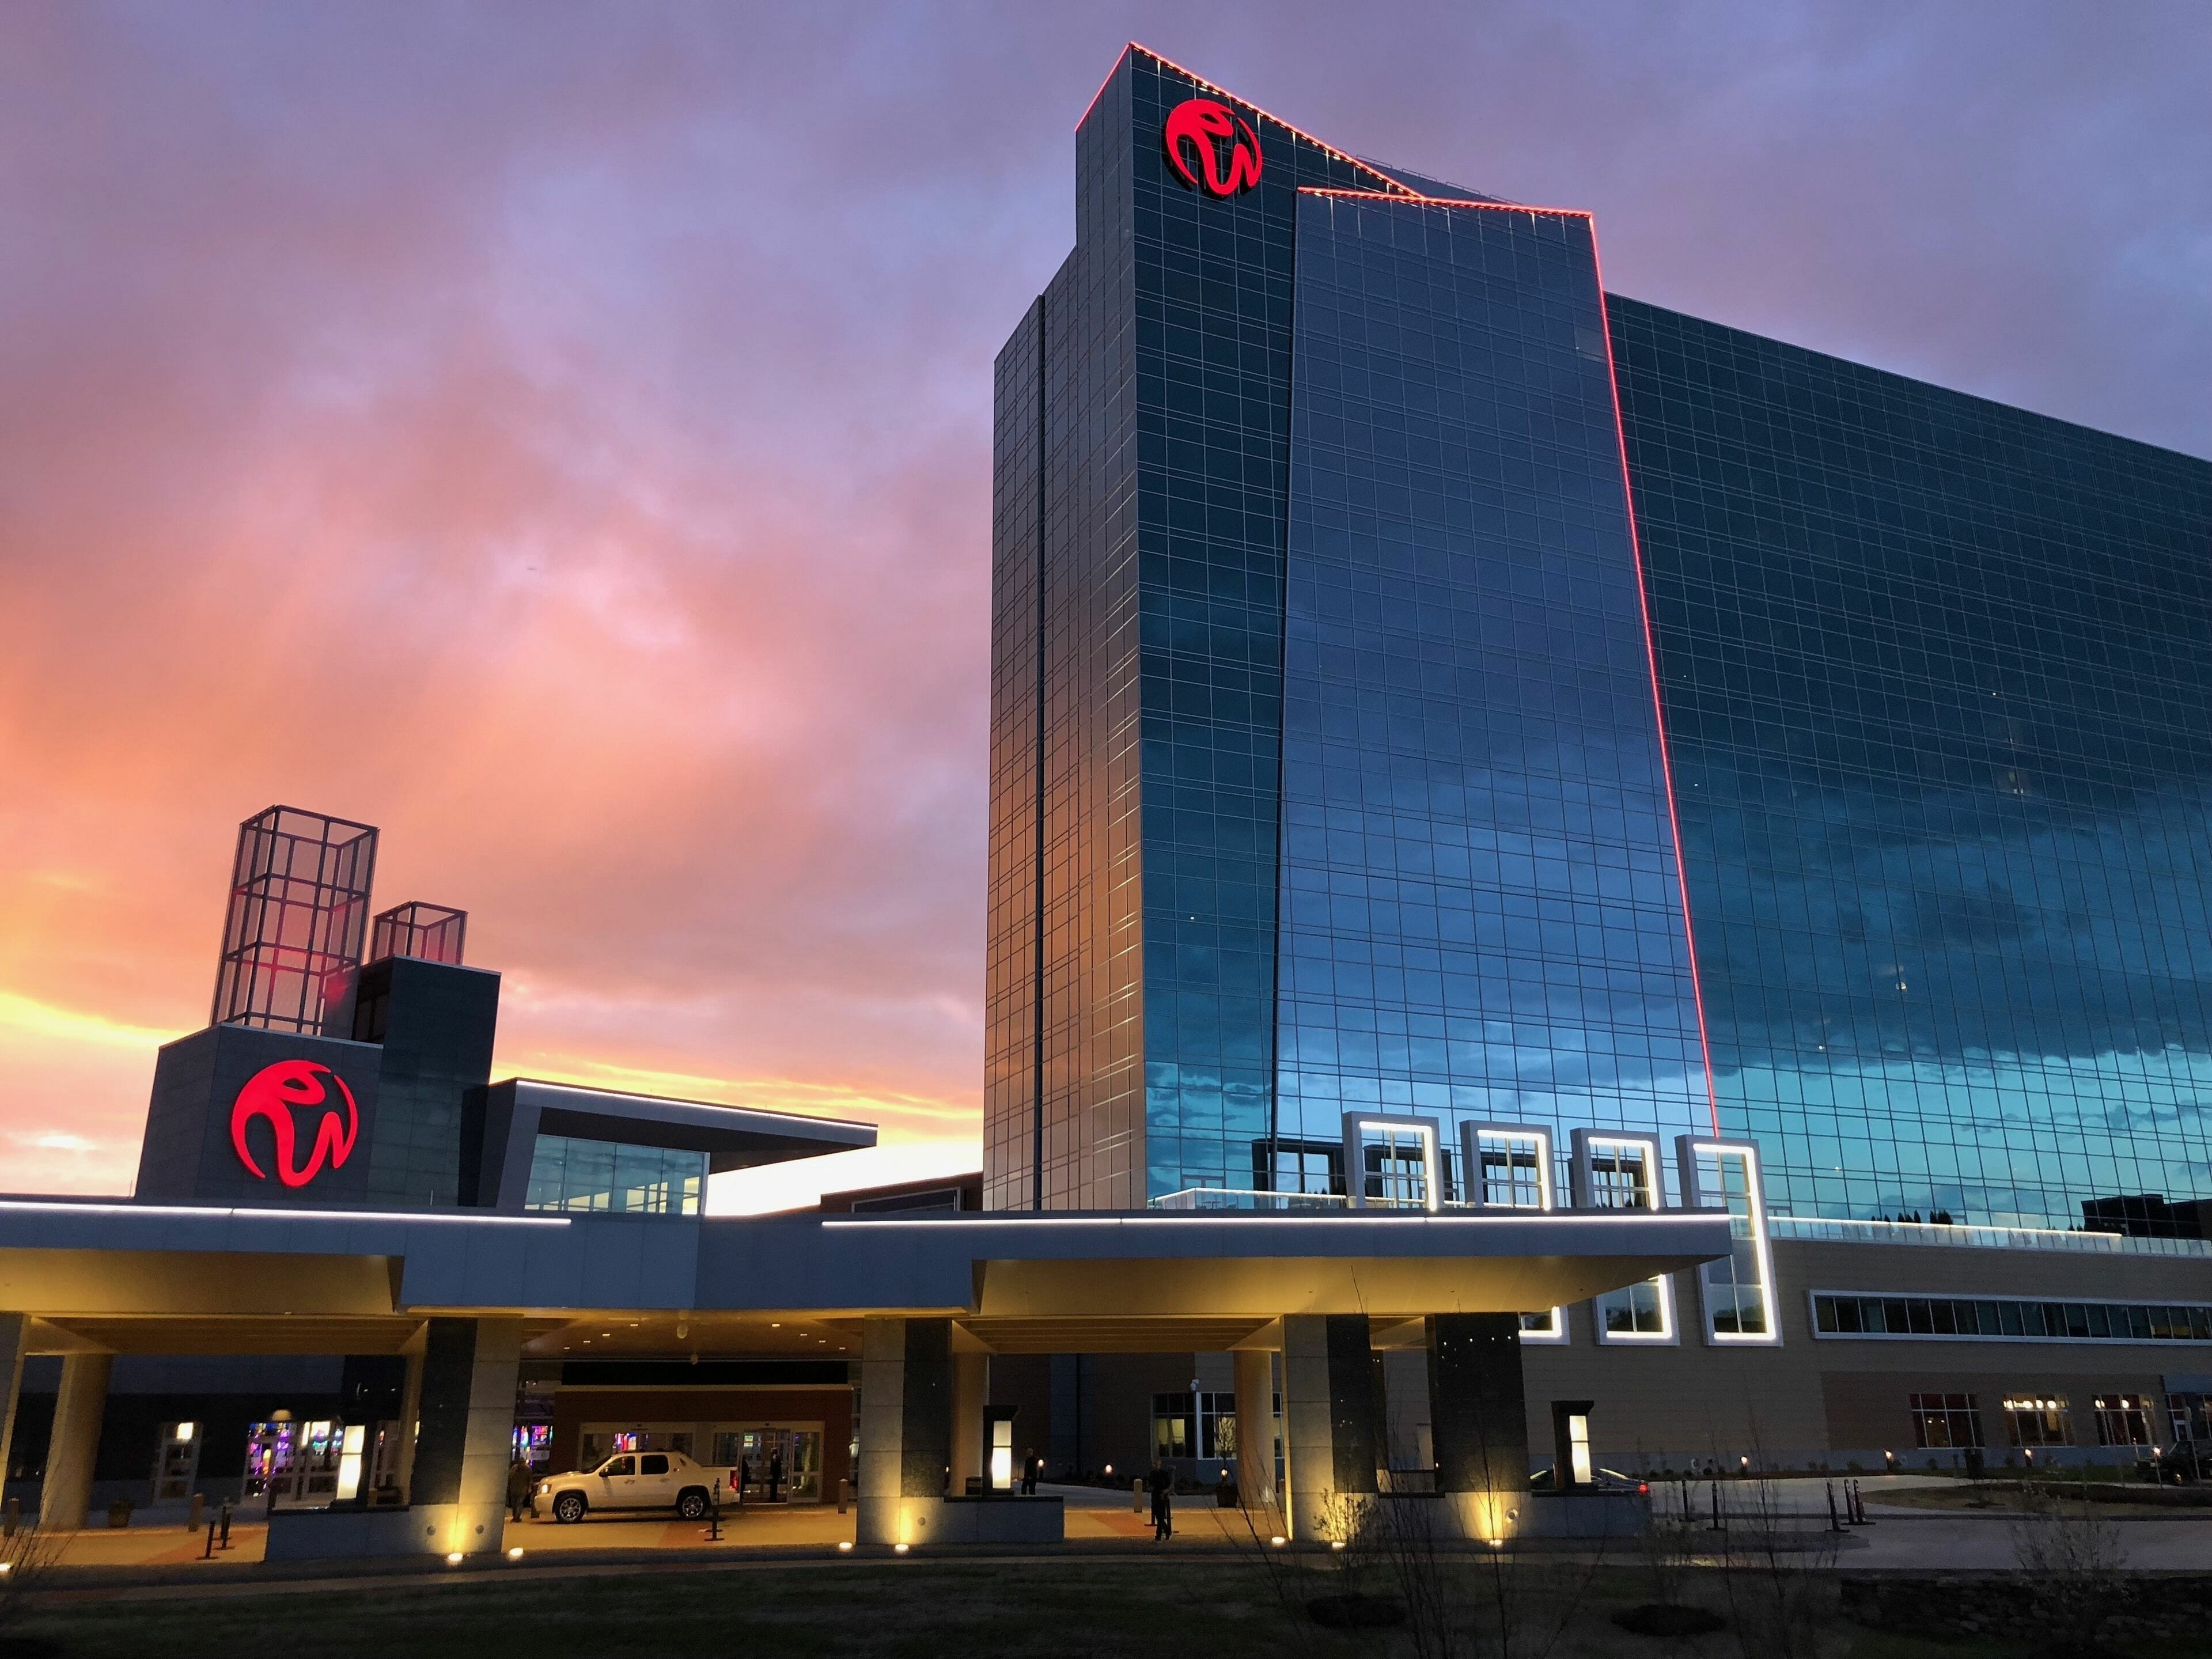 Building view of Resorts World Catskills Casino